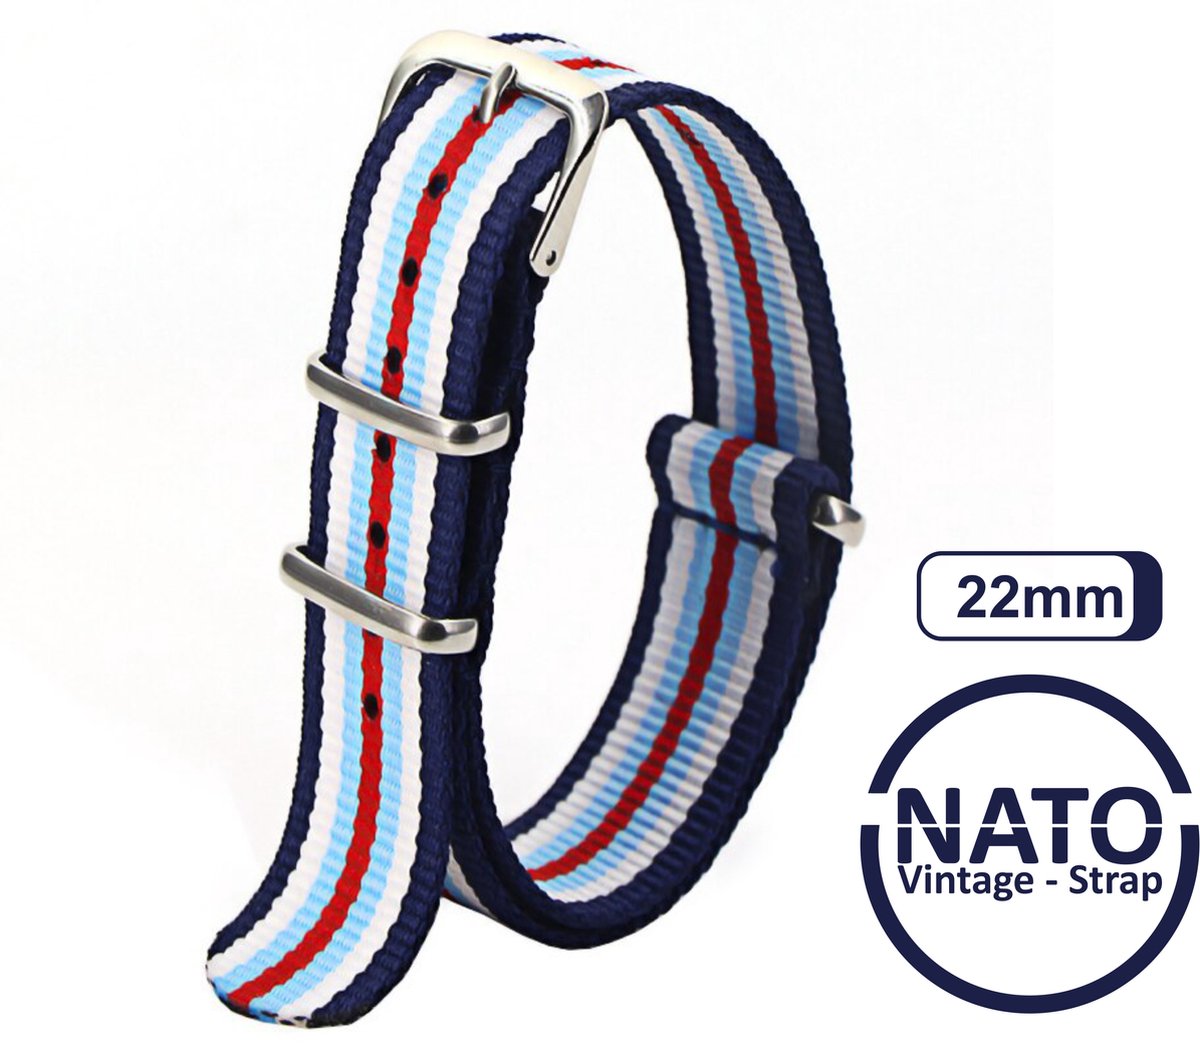 22mm Nato Strap Rood Wit Blauw streep - Vintage James Bond - Nato Strap collectie - Mannen - Horlogebanden - Martini kleursamenstelling 22 mm bandbreedte voor oa. Seiko Rolex Omega Casio en Citizen